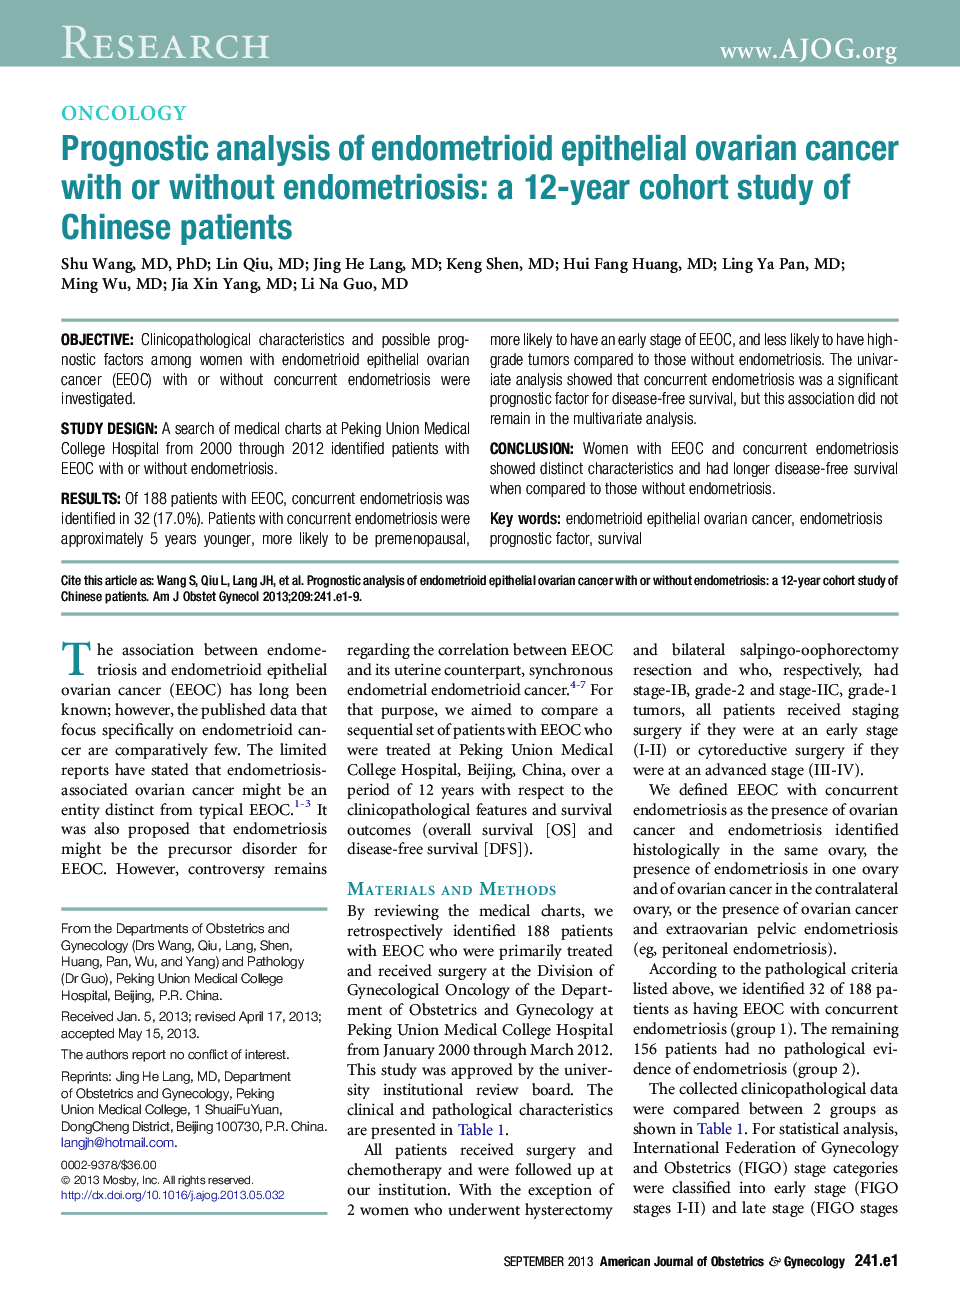 تجزیه و تحلیل پیش آگهی سرطان تخمدان اپیتلیال آندومتریوئید با یا بدون آندومتریوز: یک مطالعه ی کوهورت 12 ساله از بیماران چینی 